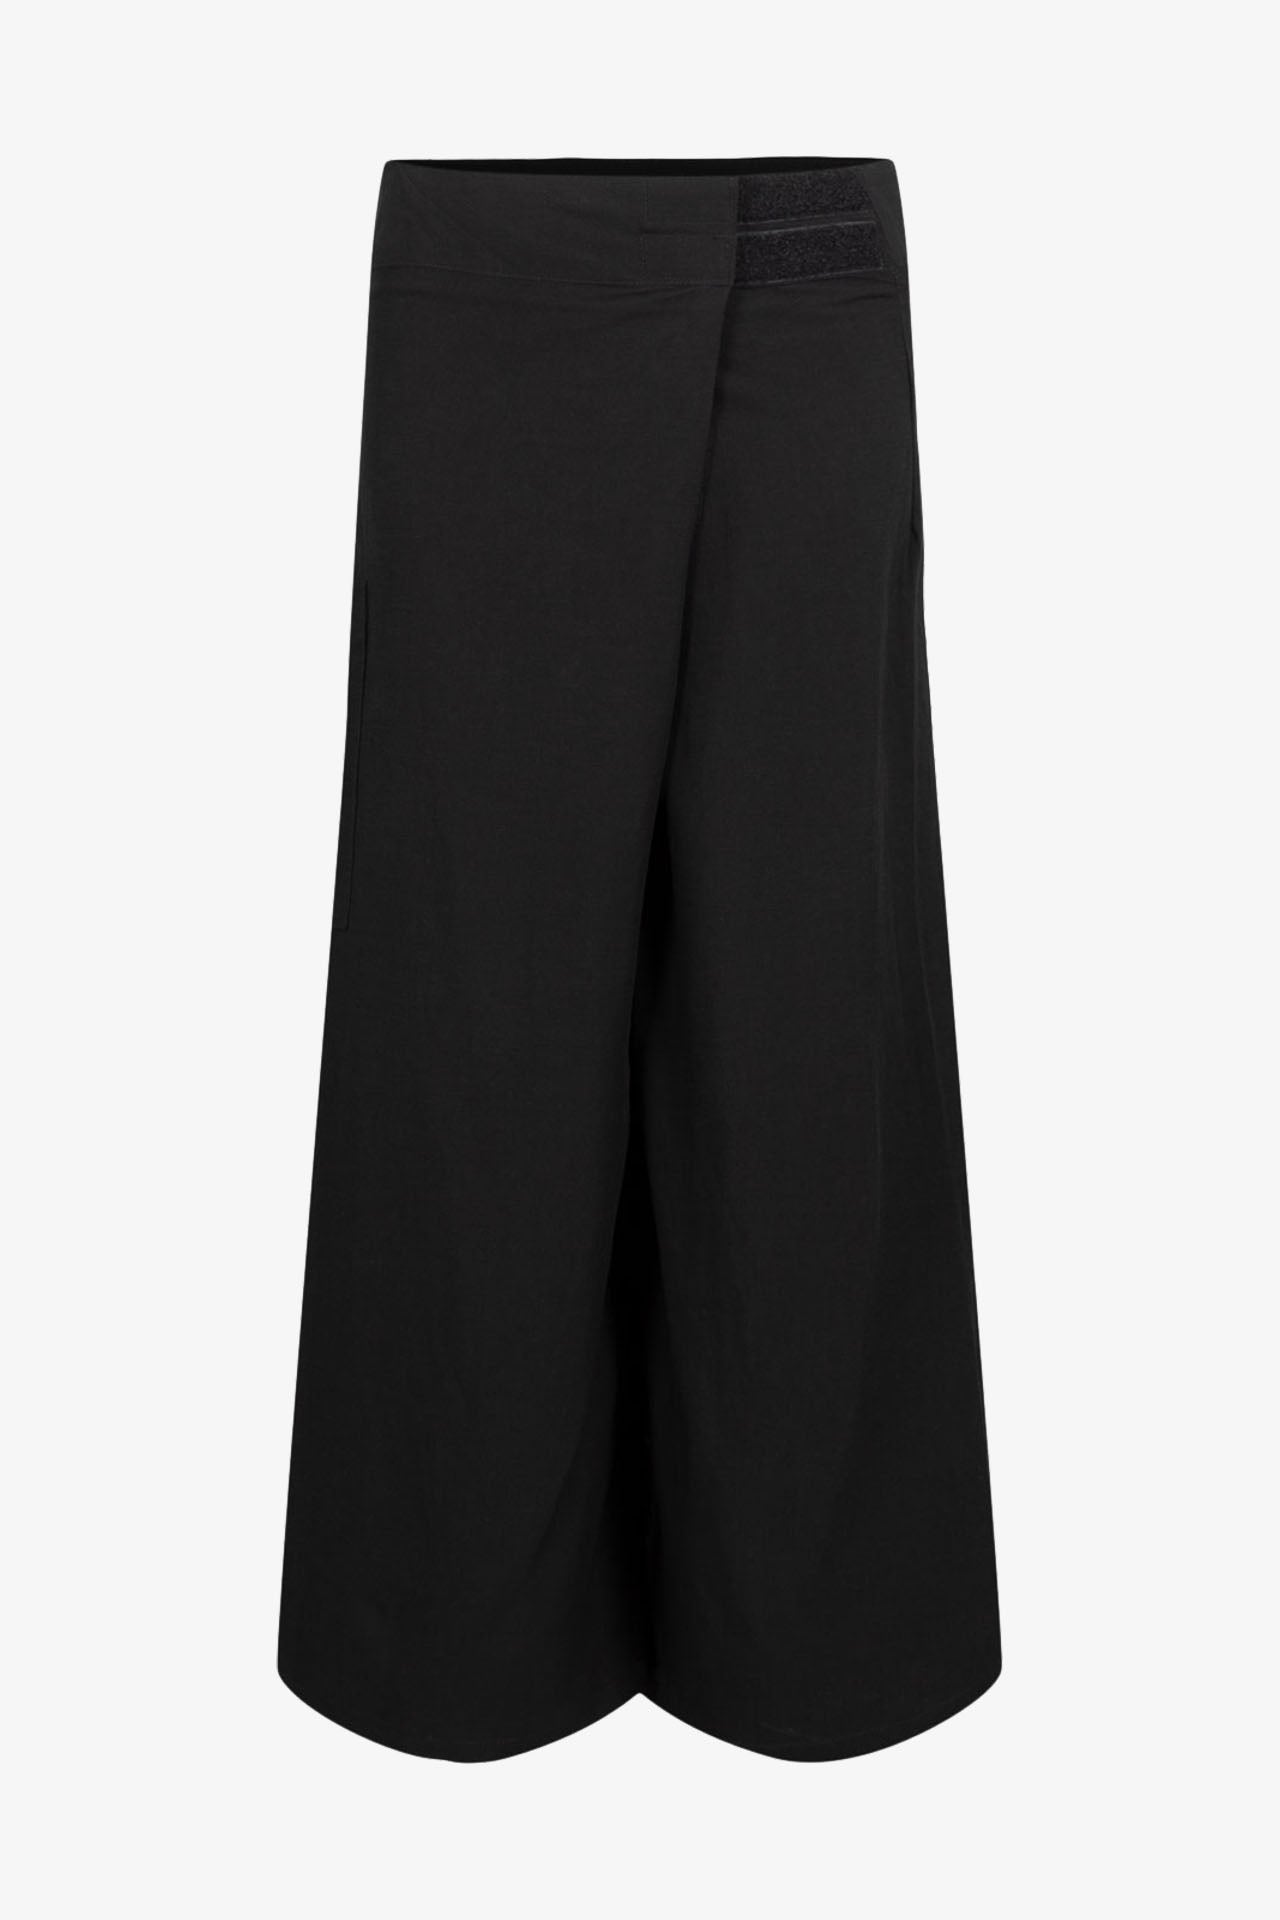 Pantalon Bali Lin Viscose Noir